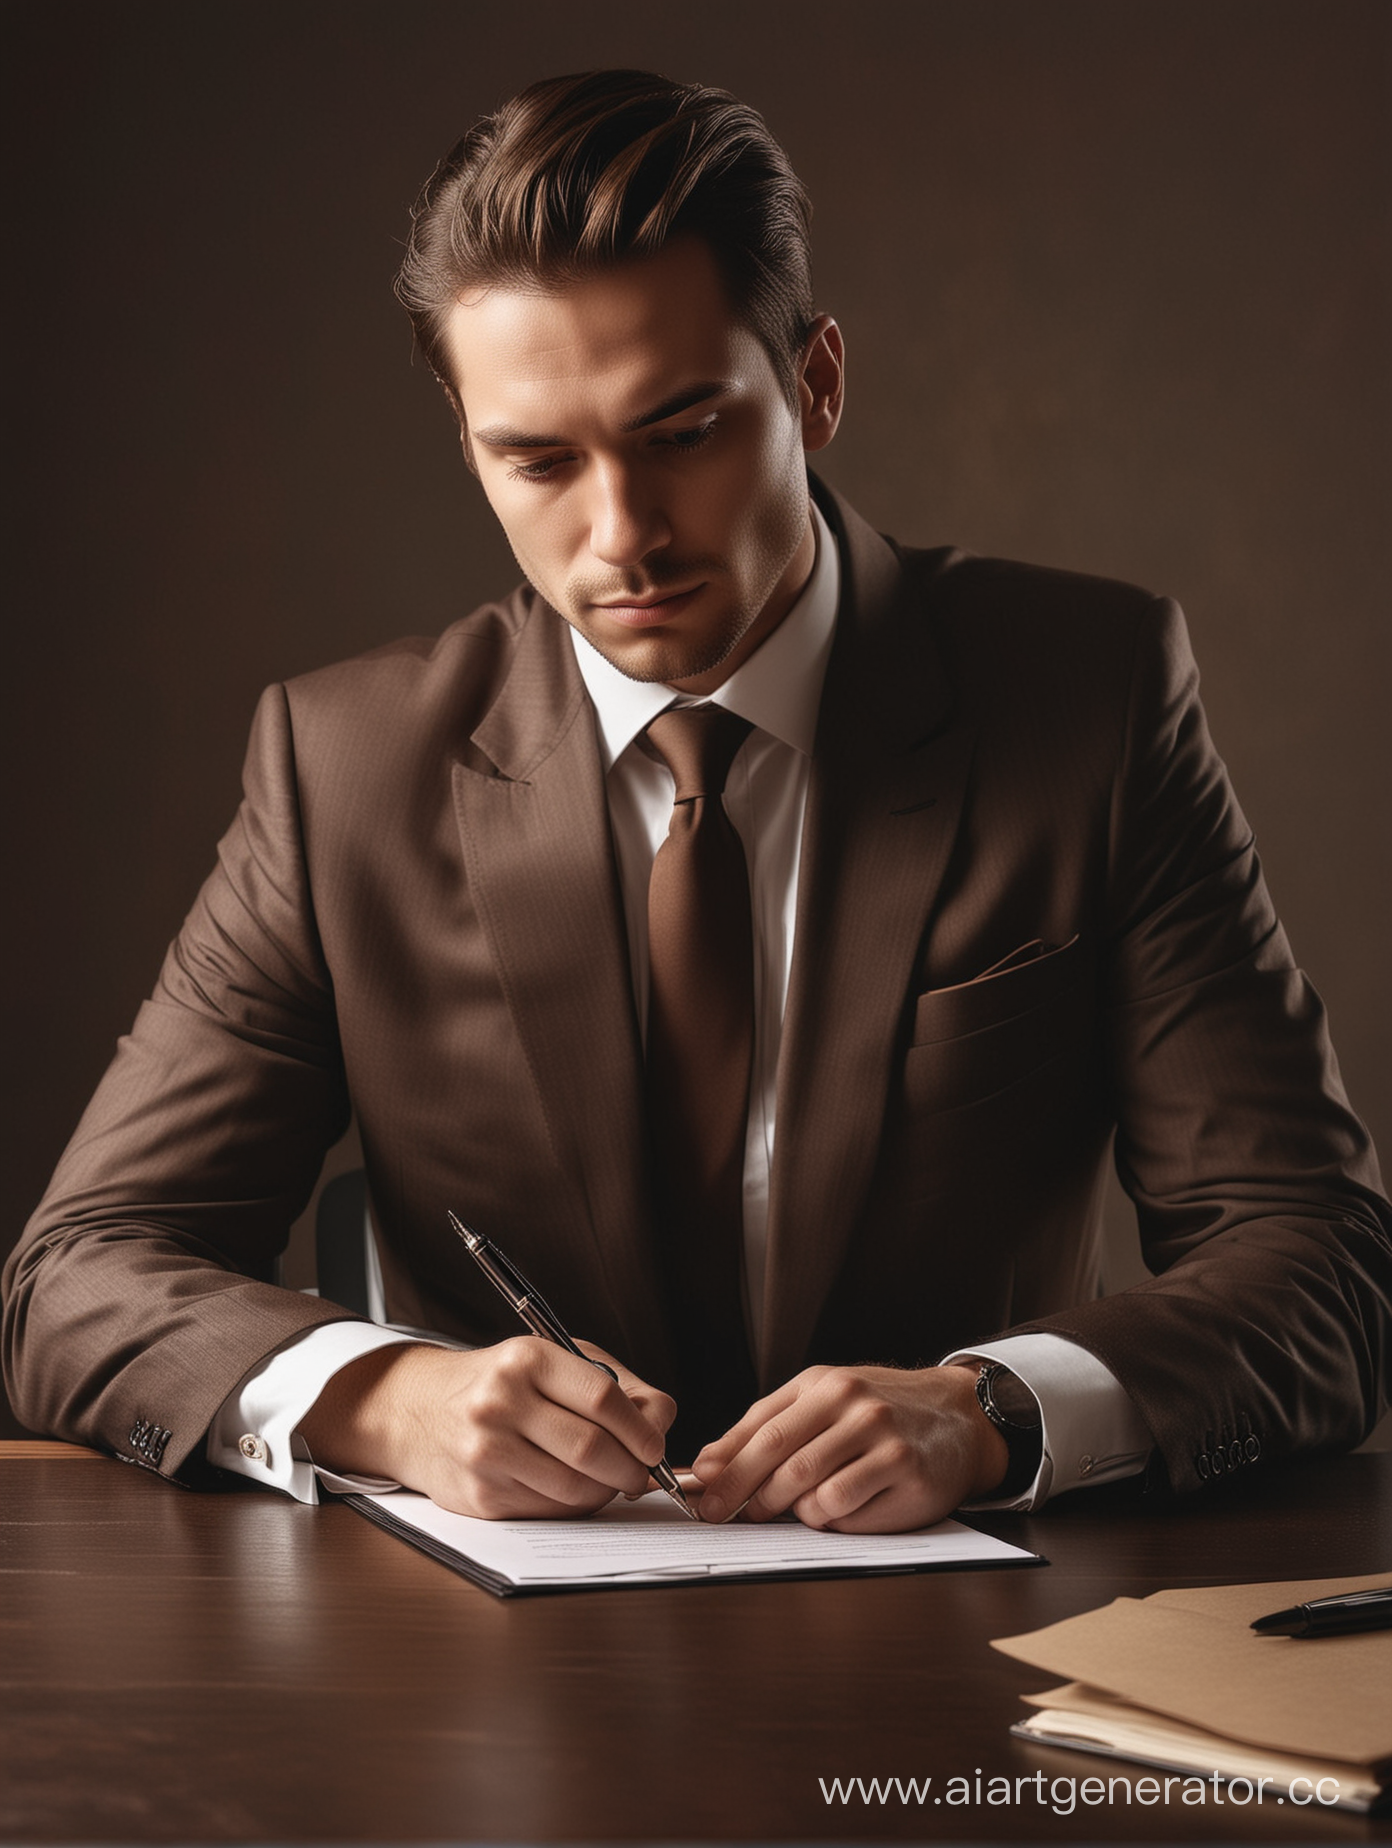 Человек в деловом костюме со спокойным выражением лица подписывает договор, изображение должно быть выполнено в тёмных приятных коричневых тонах человек должен быть виден наполовину